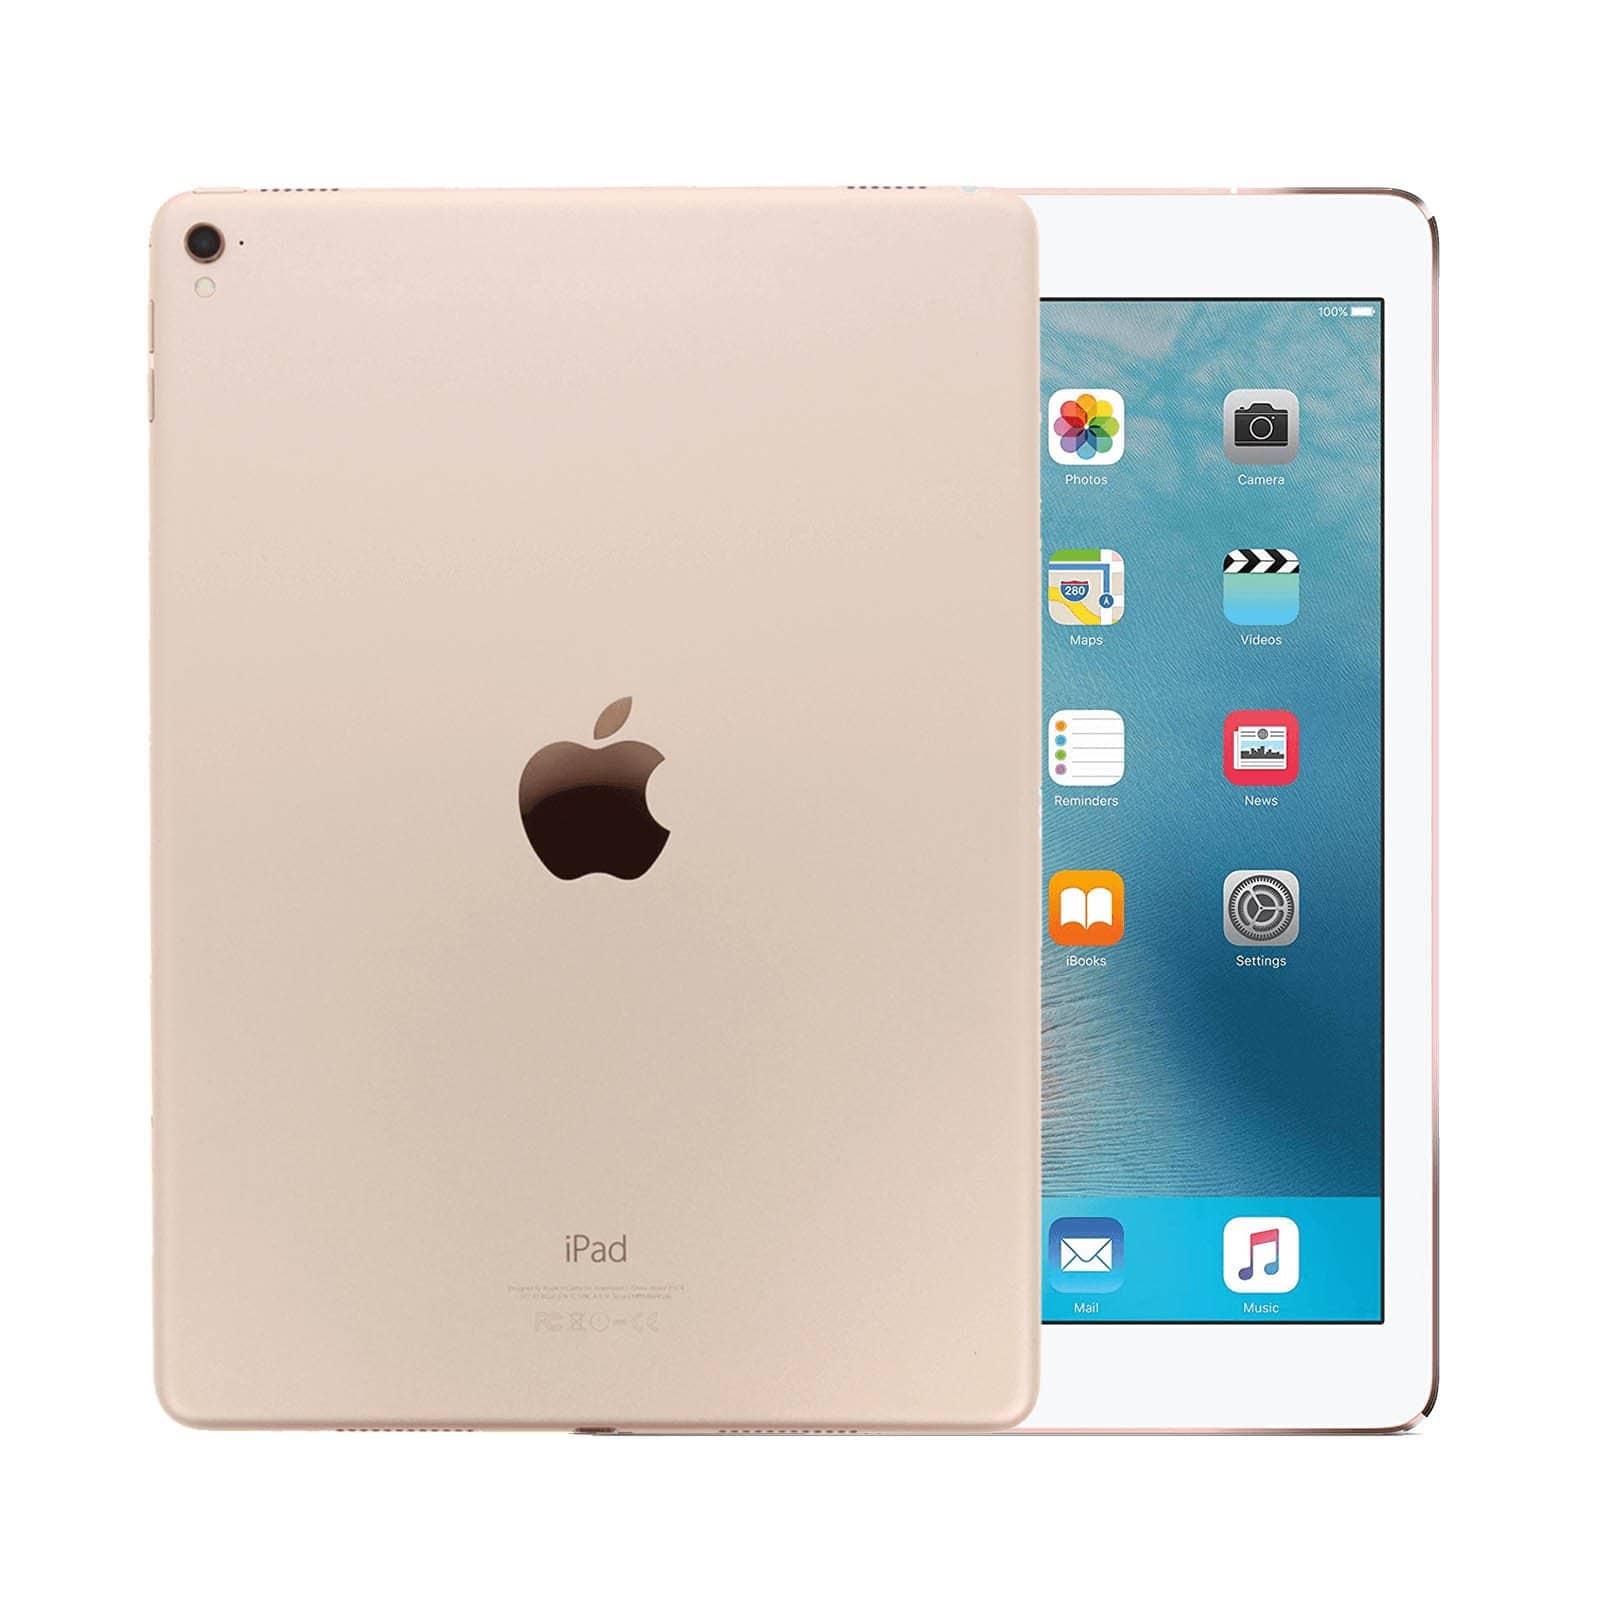 iPad Pro 9.7 Inch 128GB Gold Pristine - WiFi 128GB Gold Pristine